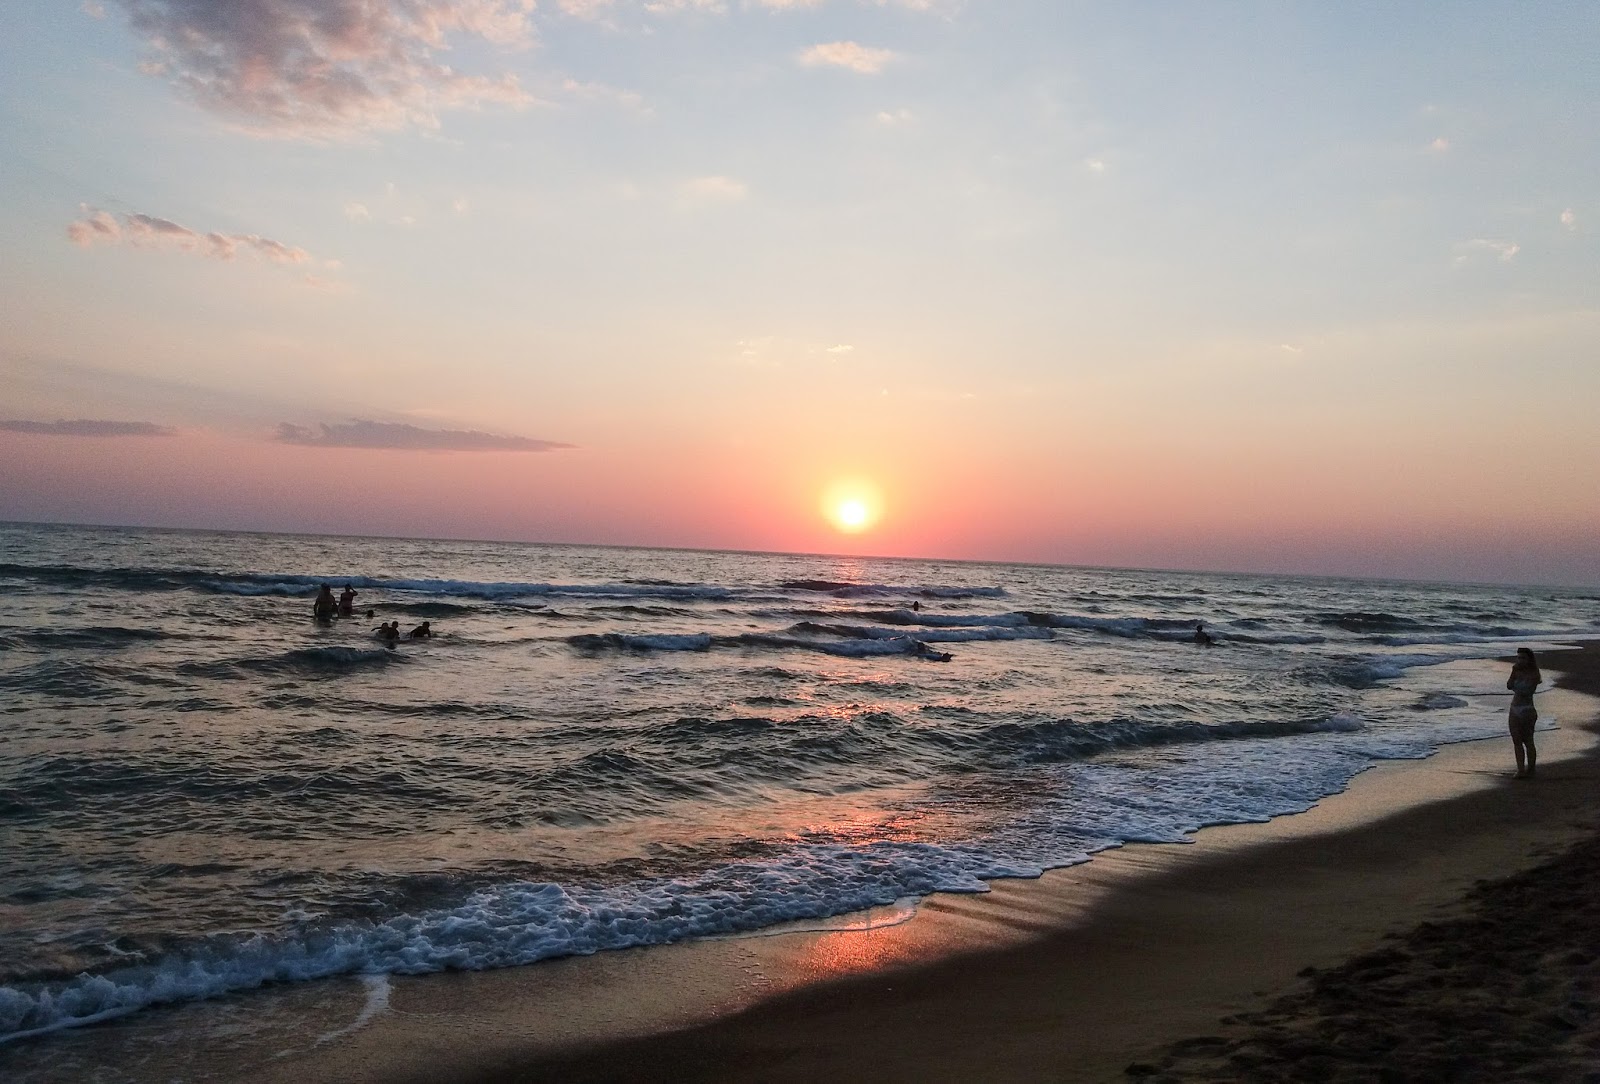 Γιάννης Λύρης: Παραλία Ζαχάρω. Δυτική Πελοπόννησος: Ηλιοβασίλεμα, η απόλυτη  ηρεμία.